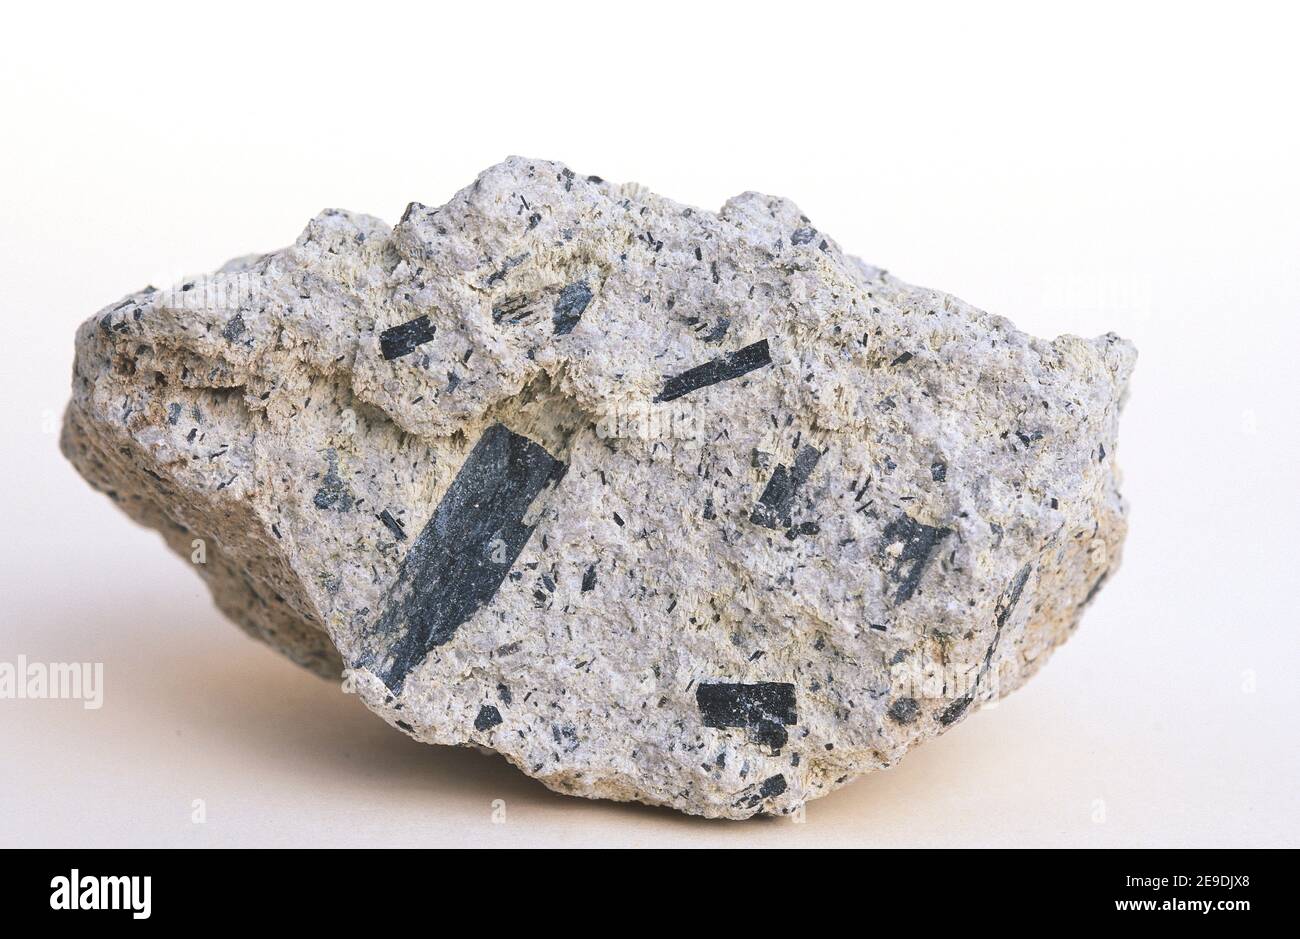 L'andesite è una roccia vulcanica di composizione intermedia. Questo campione ha una struttura porfiritica con grandi cristalli di plagioclasi. Questo campione viene a. Foto Stock